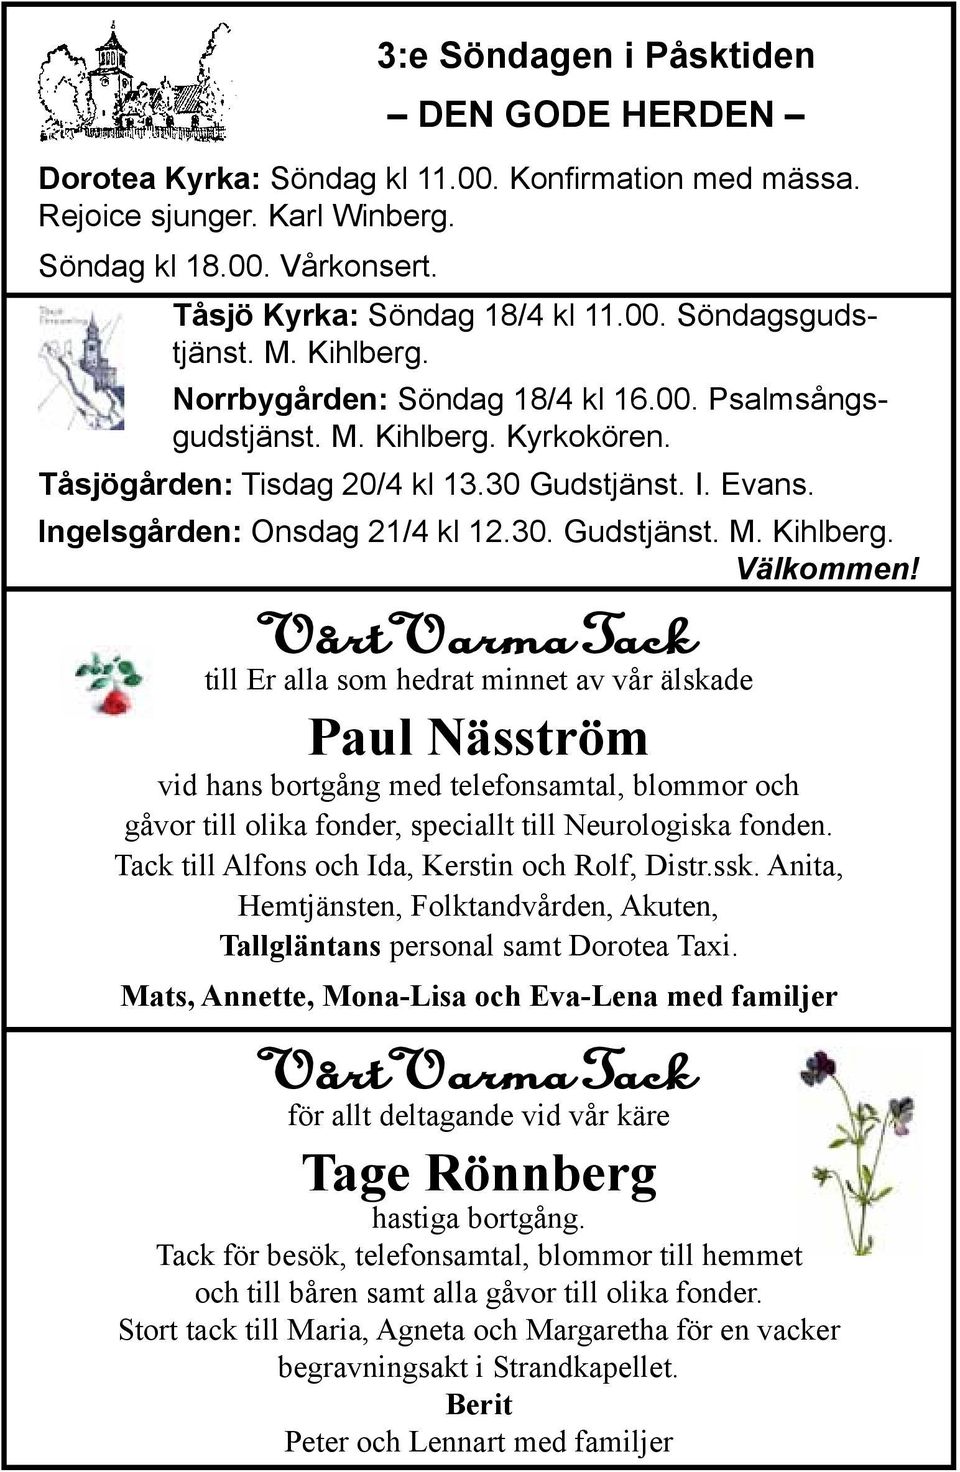 Vårt Varma Tack till Er alla som hedrat minnet av vår älskade Paul Näsström vid hans bortgång med telefonsamtal, blommor och gåvor till olika fonder, speciallt till Neurologiska fonden.